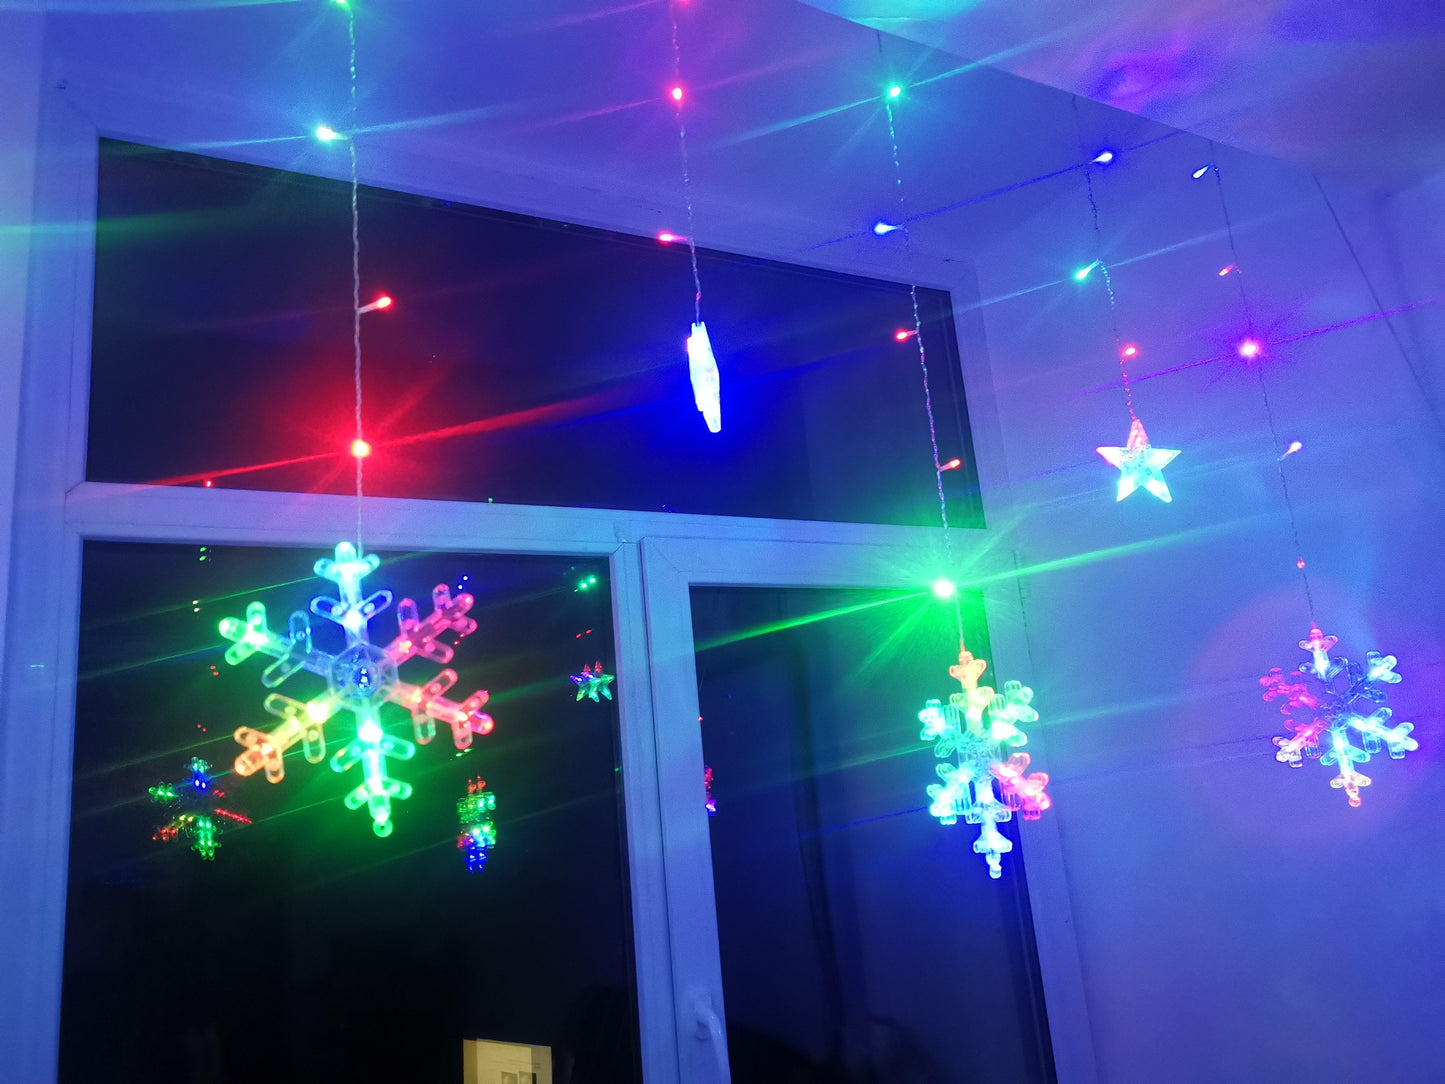 Χριστουγεννιάτικα φωτάκια "Snowflakes", 270 cm